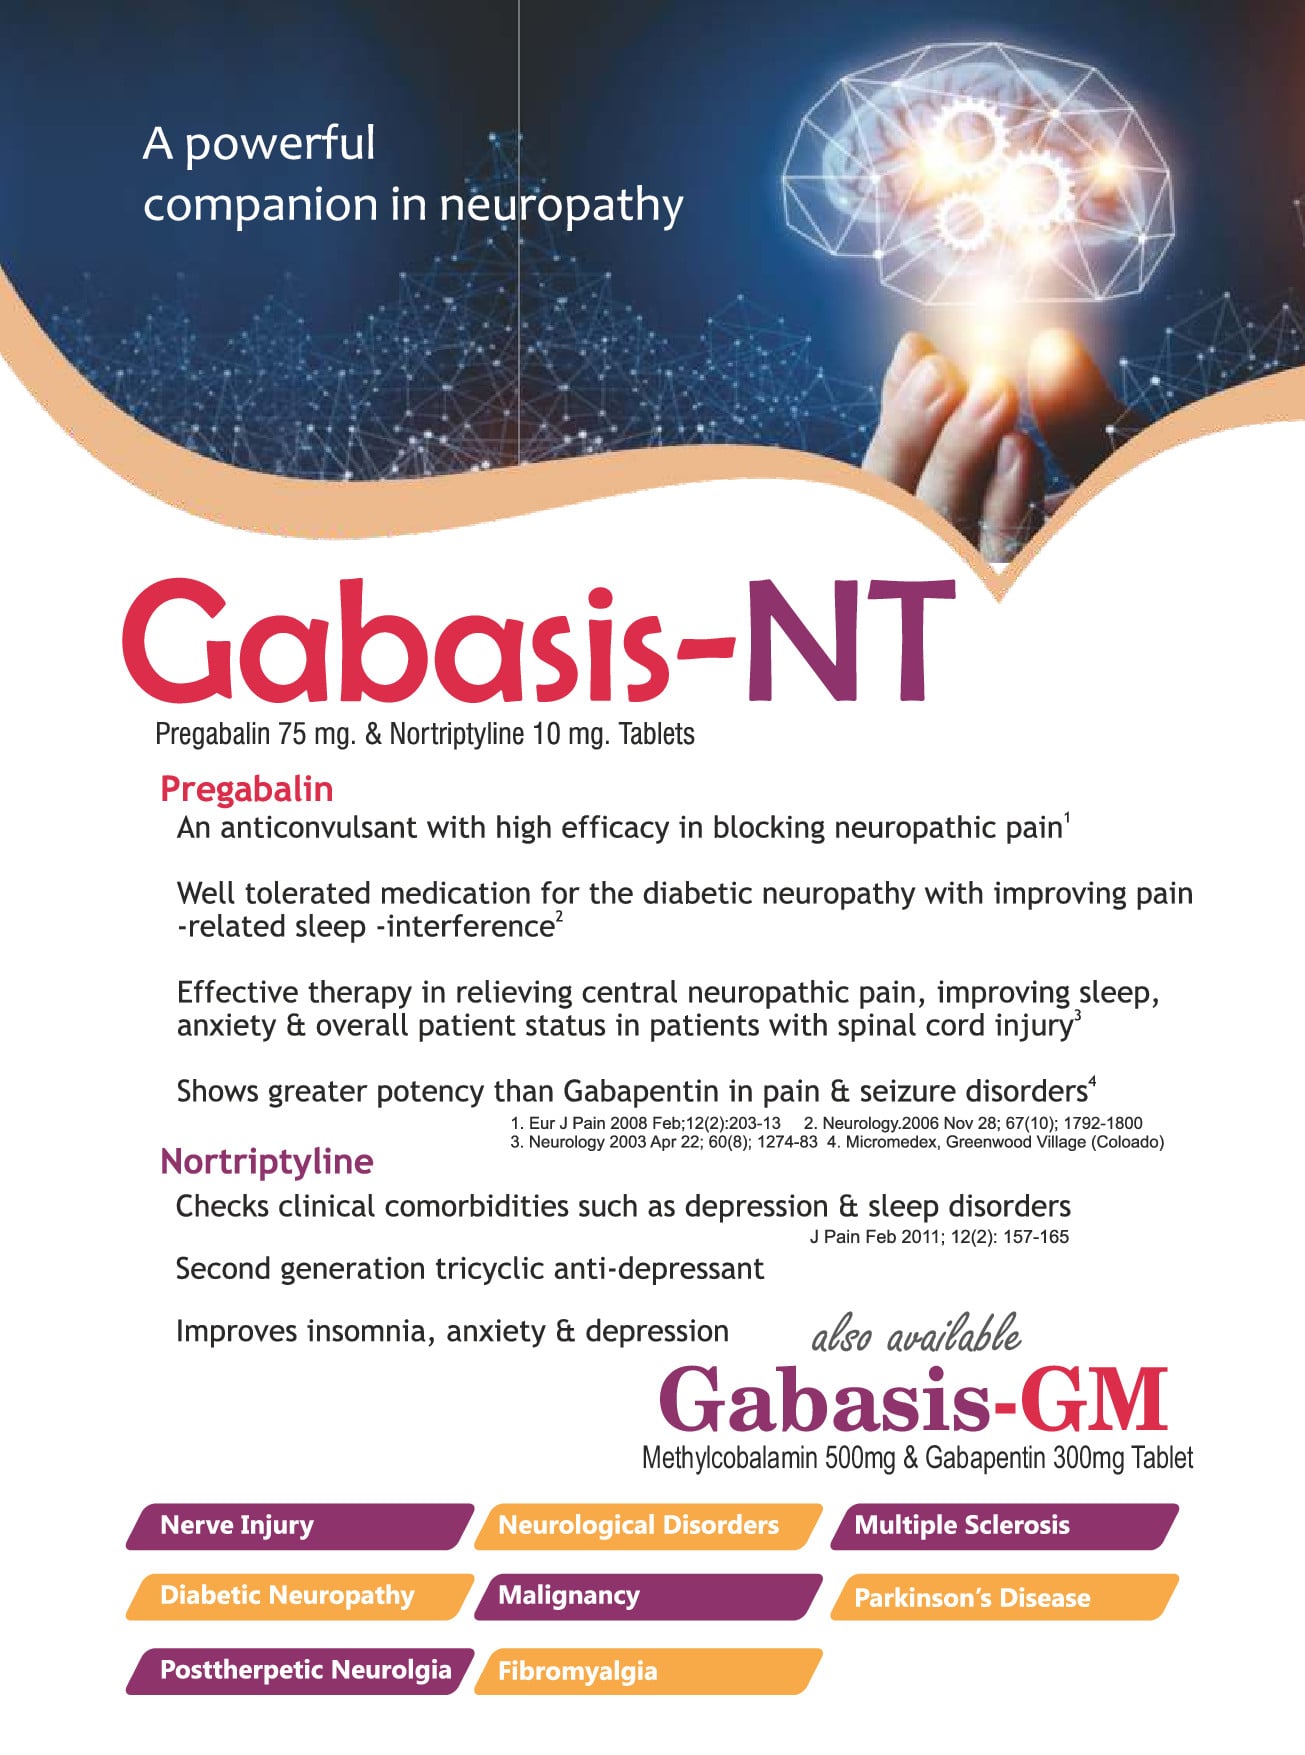 Gabasis-NT